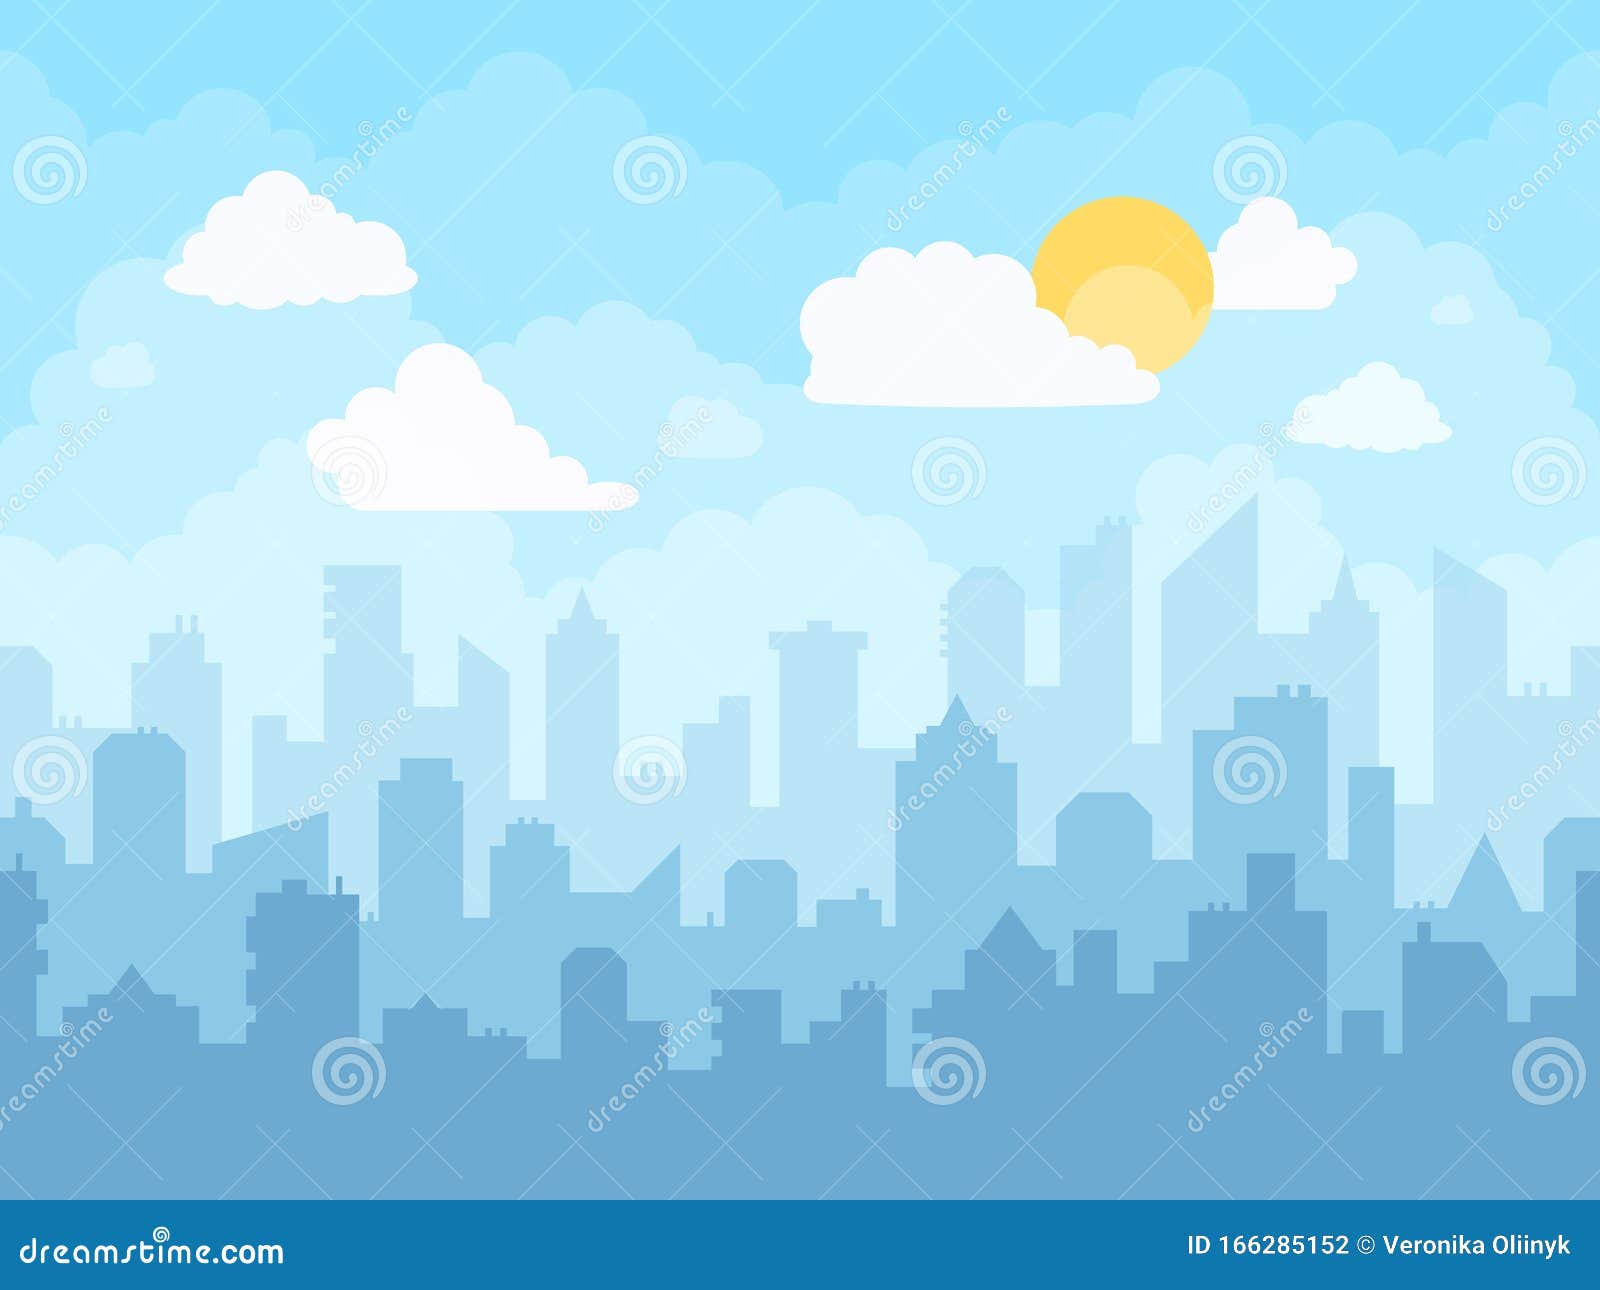 Phong cảnh thành phố màu xanh da trời hoạt hình sẽ đem lại cho bạn trải nghiệm độc đáo và thú vị. Tổng hợp các bức ảnh với phong cảnh thành phố màu xanh da trời được xử lý bằng phép màu hoạt hình sẽ khiến bạn cảm thấy như đang đứng giữa một thế giới hoạt hình.